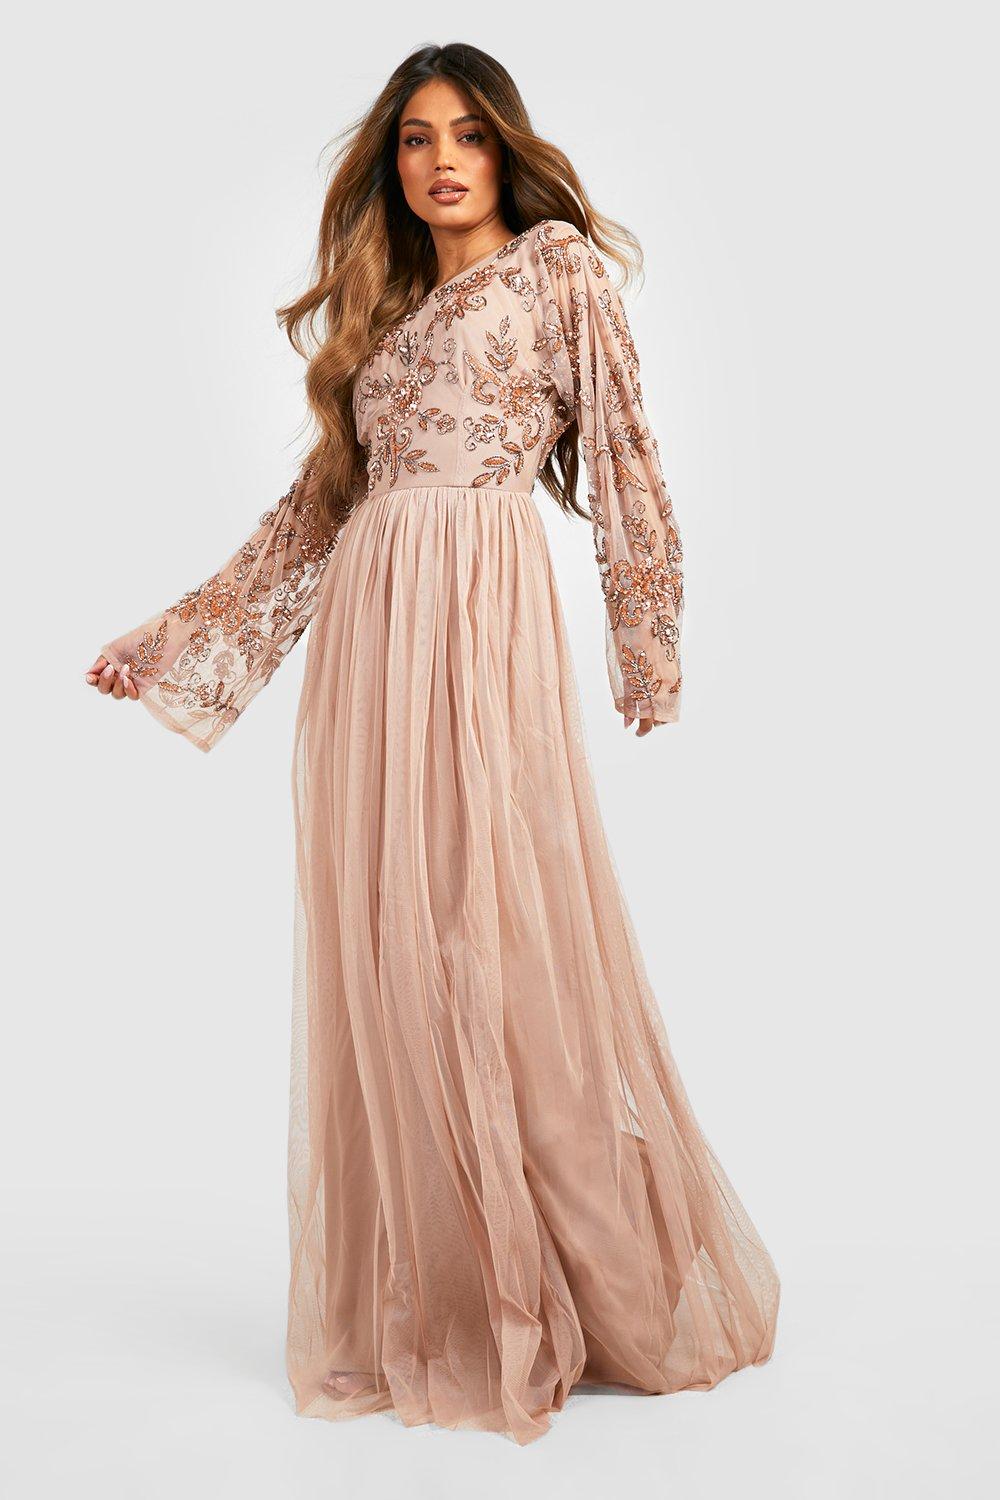 embellished blush maxi dress